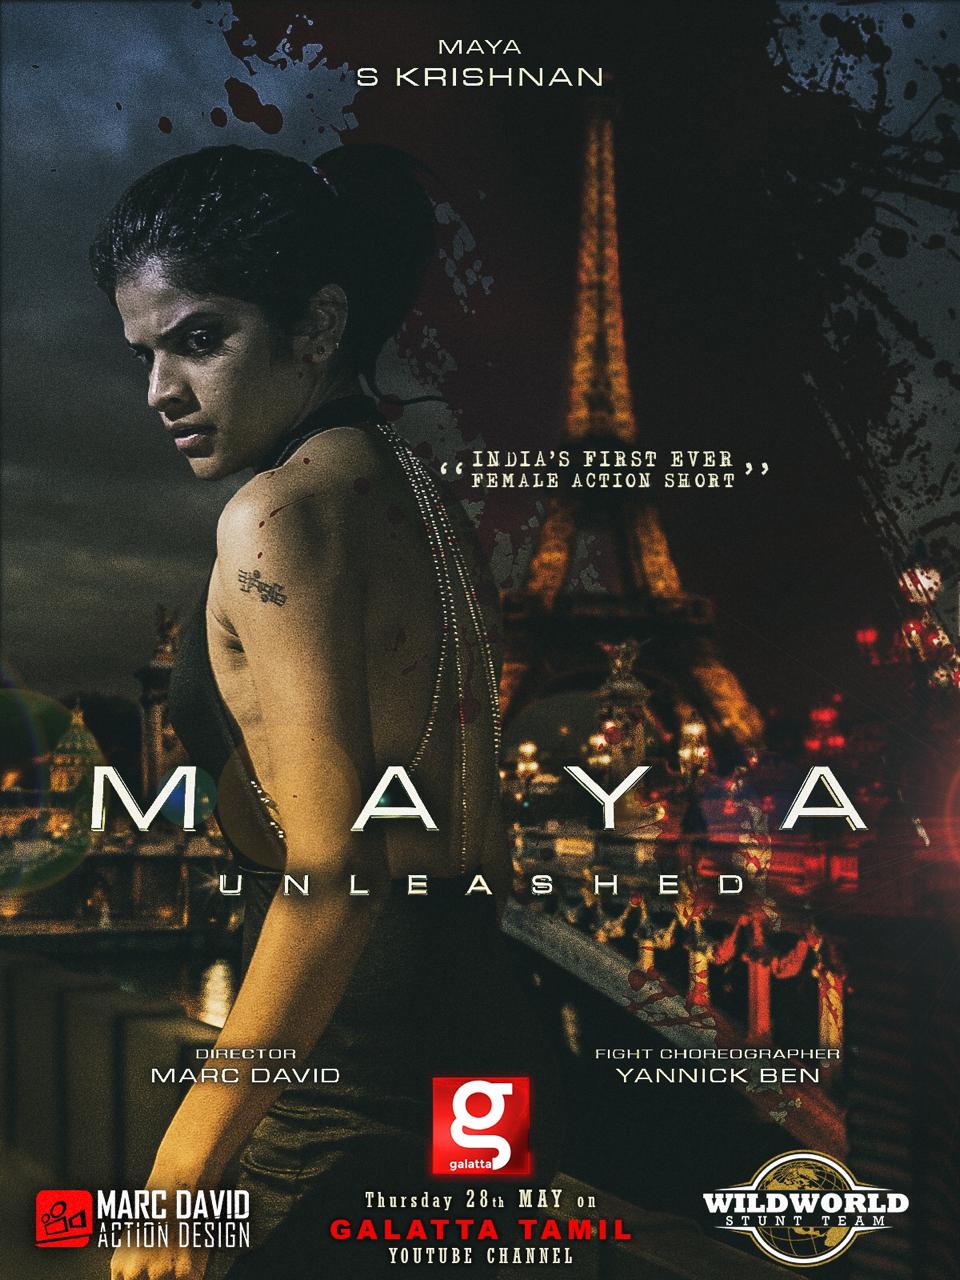 maya cinema may 11